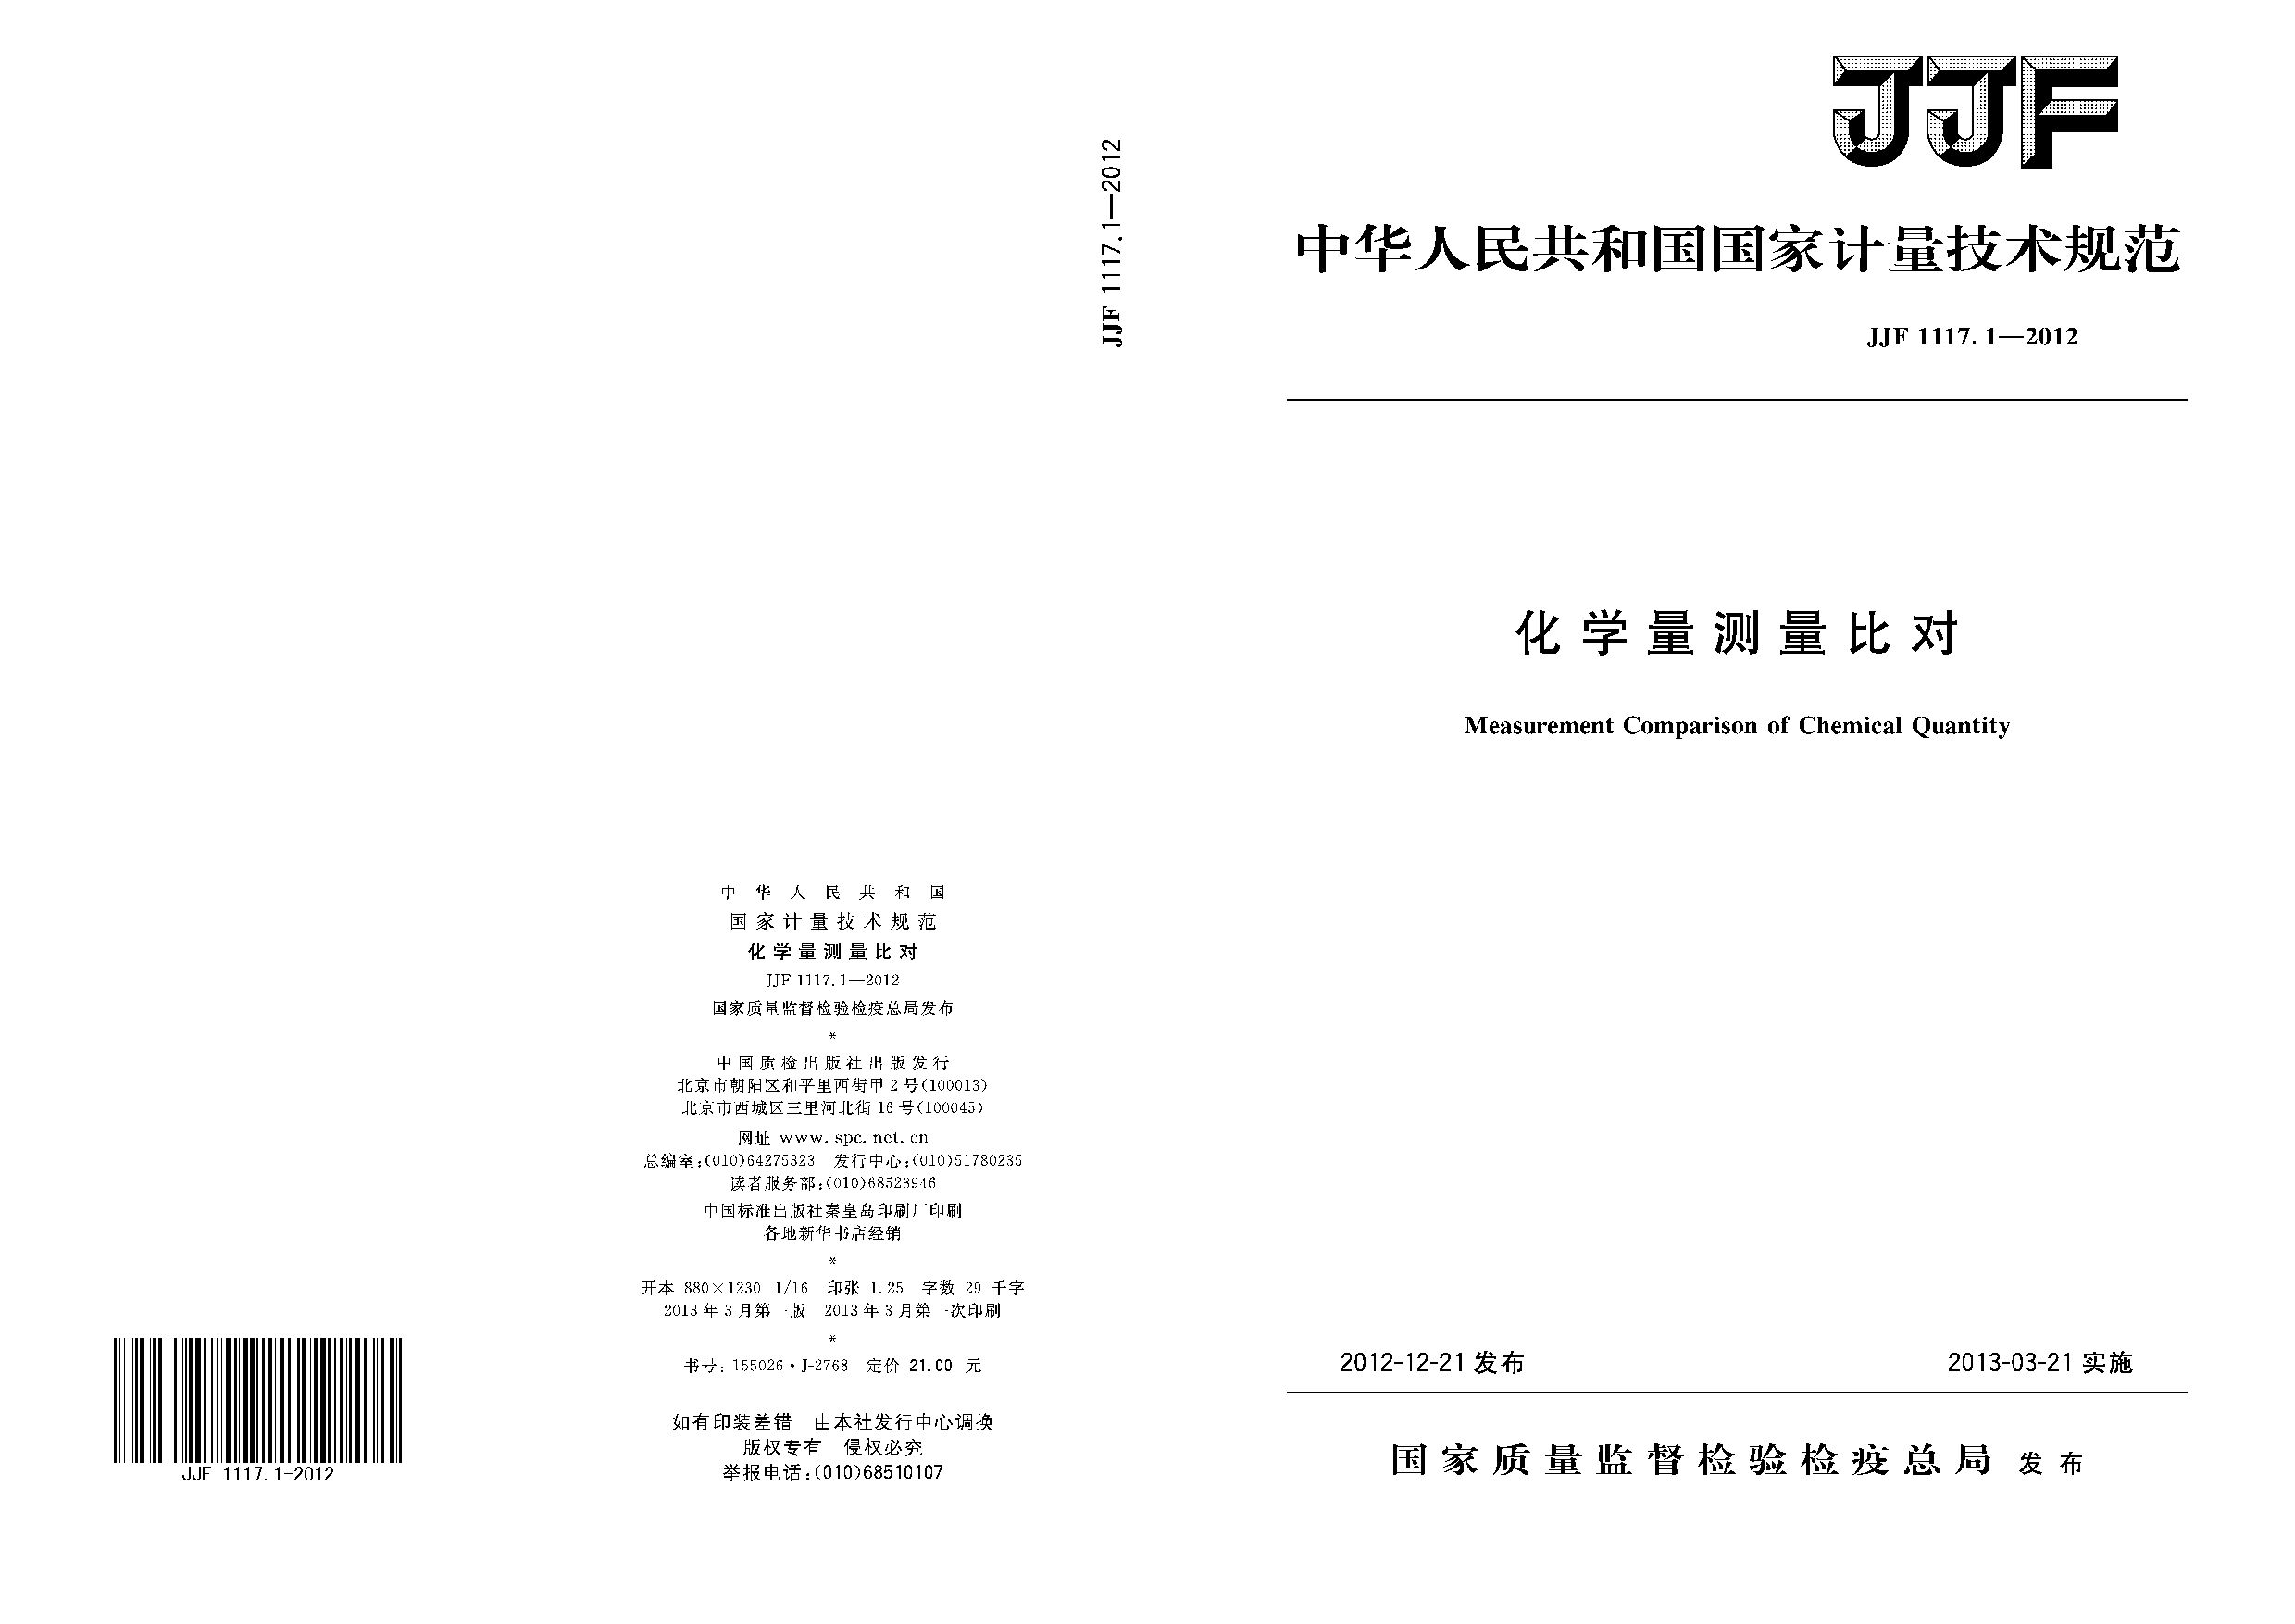 JJF 1117.1-2012封面图